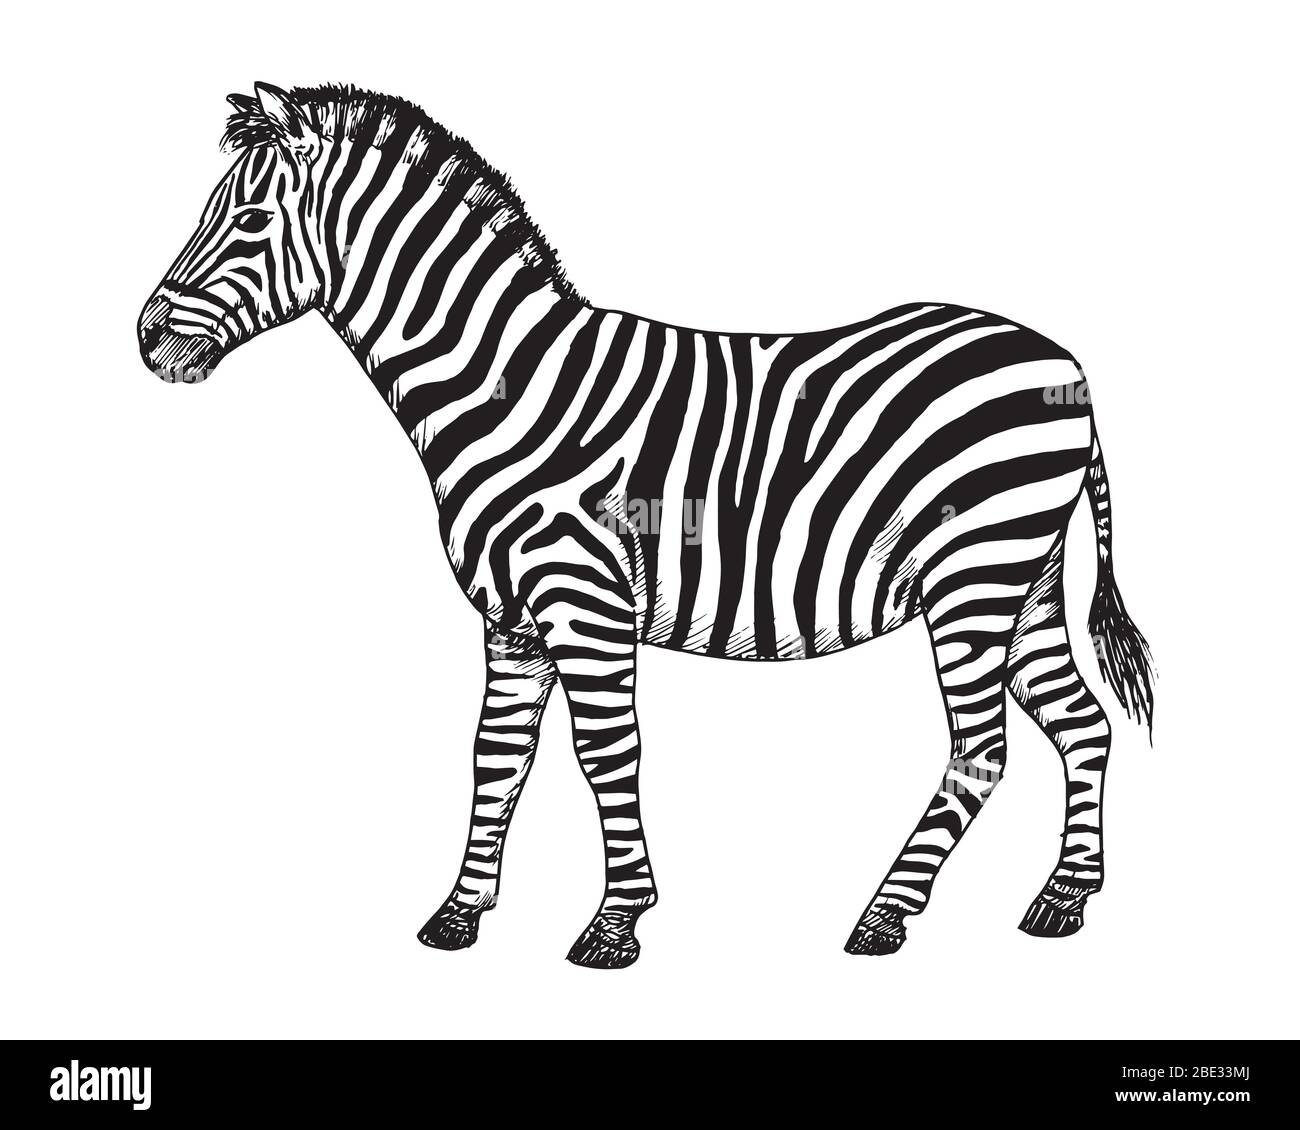 Dessin de Zebra. Esquisse de l'Equus quagga, illustration noire et blanche africaine Illustration de Vecteur